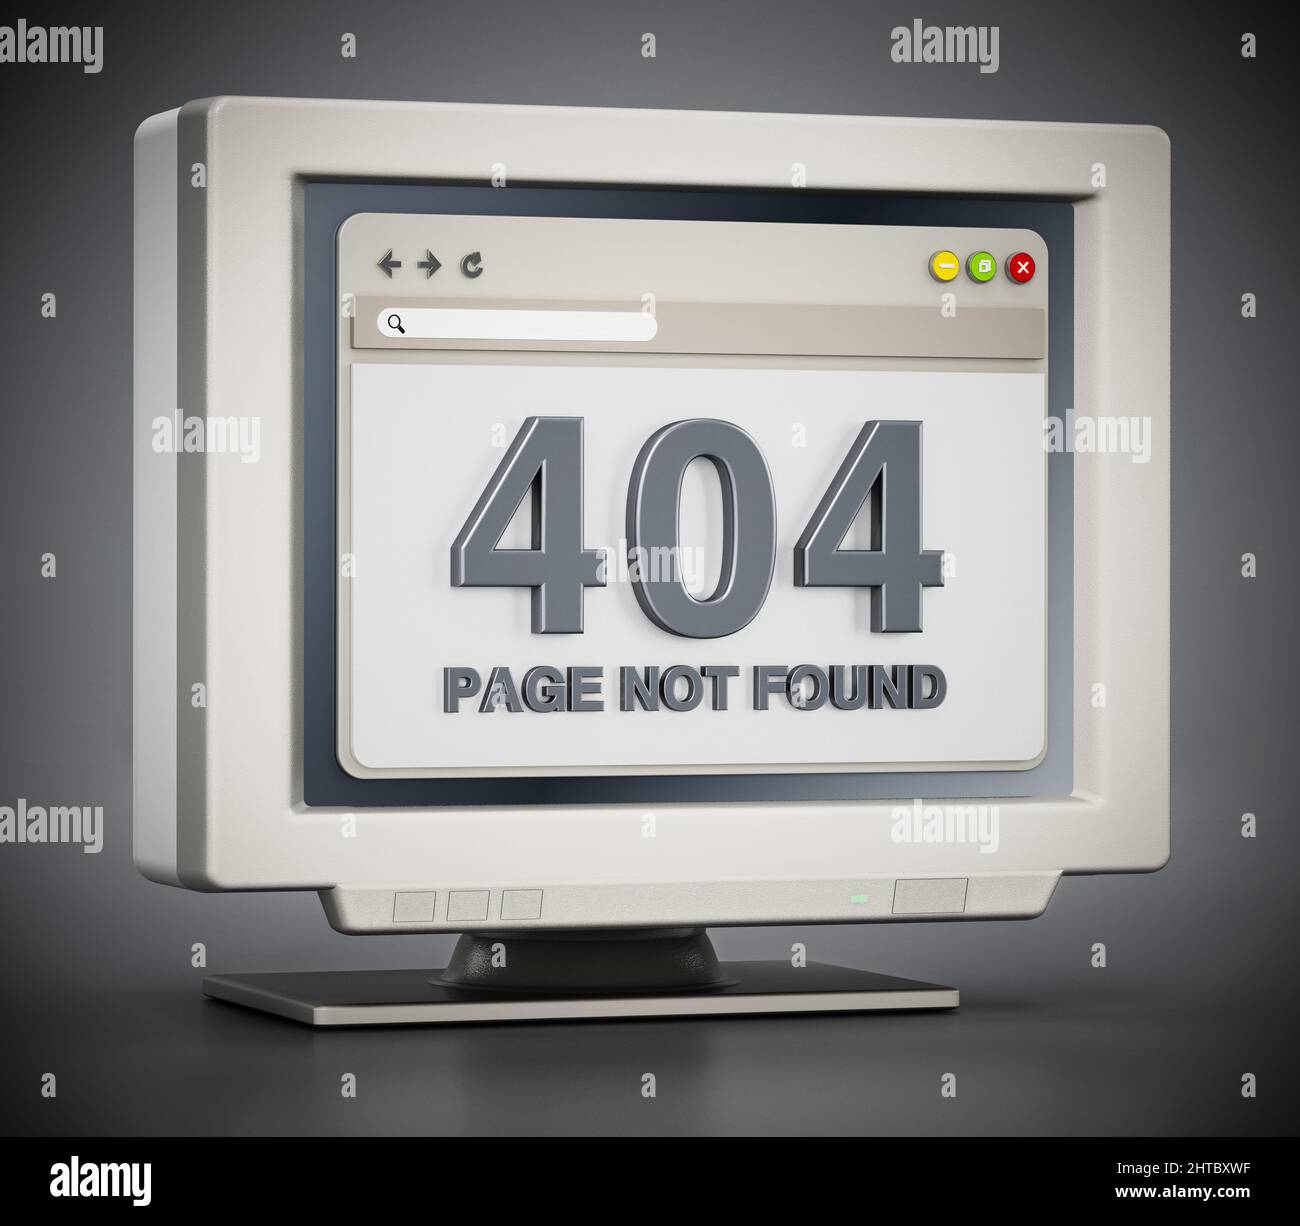 Retro-Monitor mit 404-seinit-found-Verbindungsfehlercode auf der Webseite. 3D Abbildung. Stockfoto